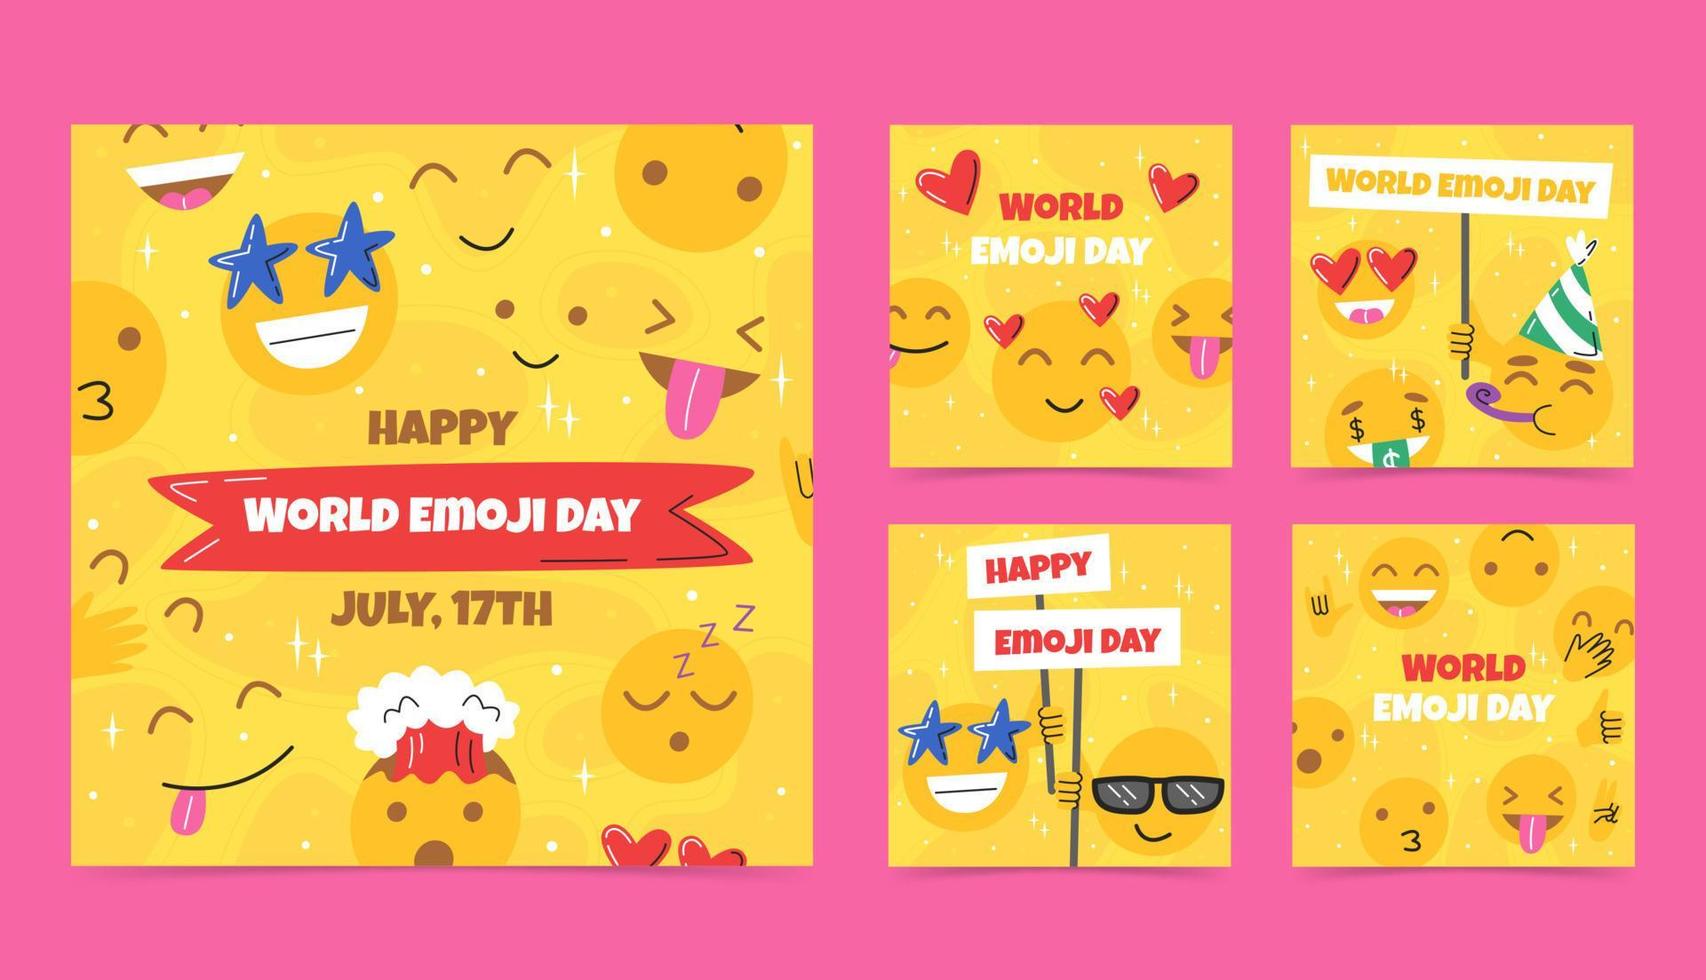 glücklicher welt-emoji-tag, social-media-vorlagen. süßes Emoji mit verschiedenen Gesichtsausdrücken auf gelbem Hintergrund. feierkonzept mit lustigen emoticons. vektor hand gezeichnete flache illustration